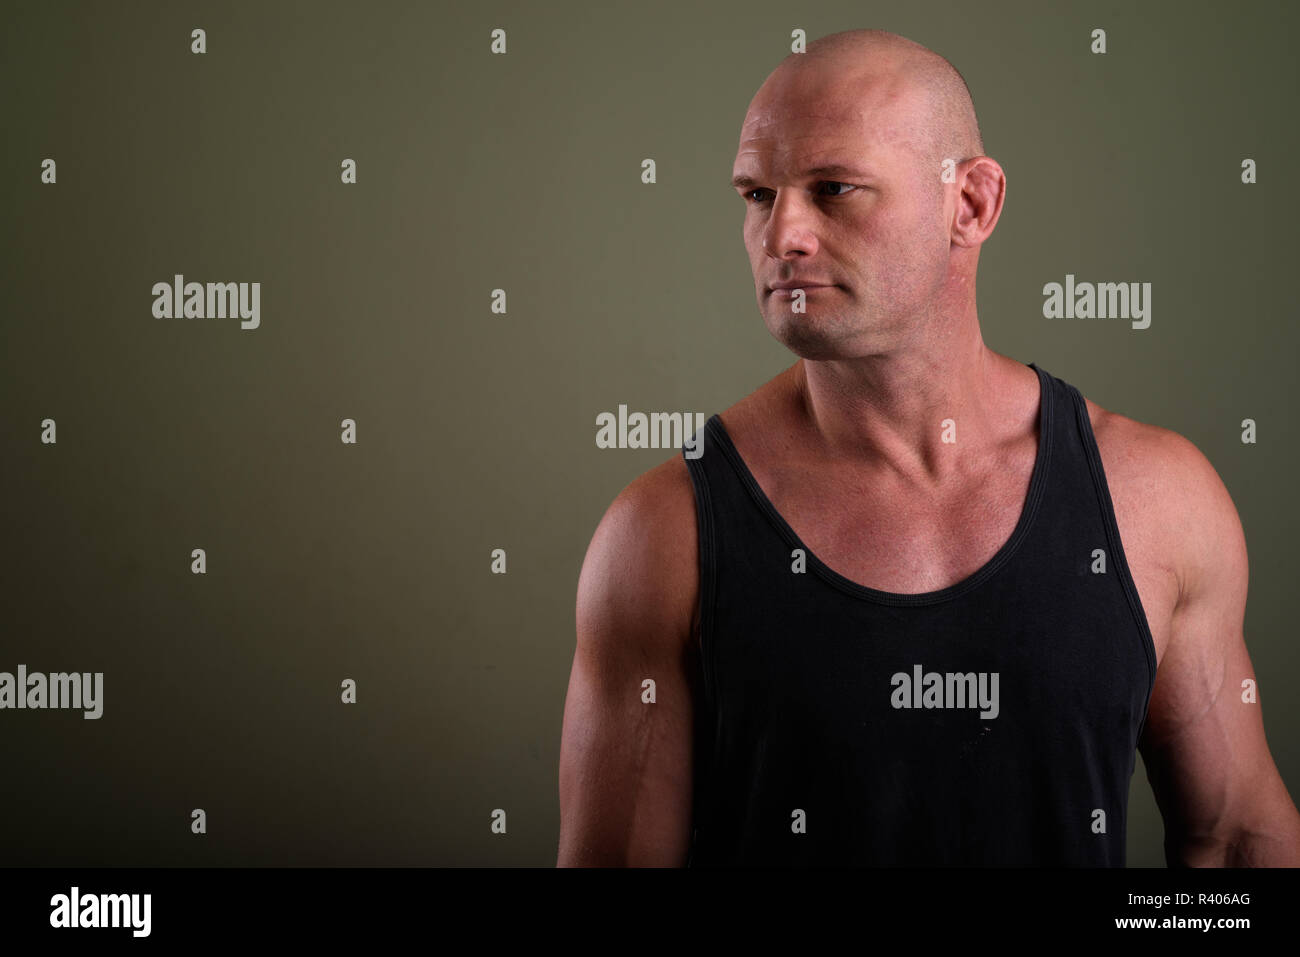 Bald man wearing tank top musclé contre l'arrière-plan de couleur Banque D'Images